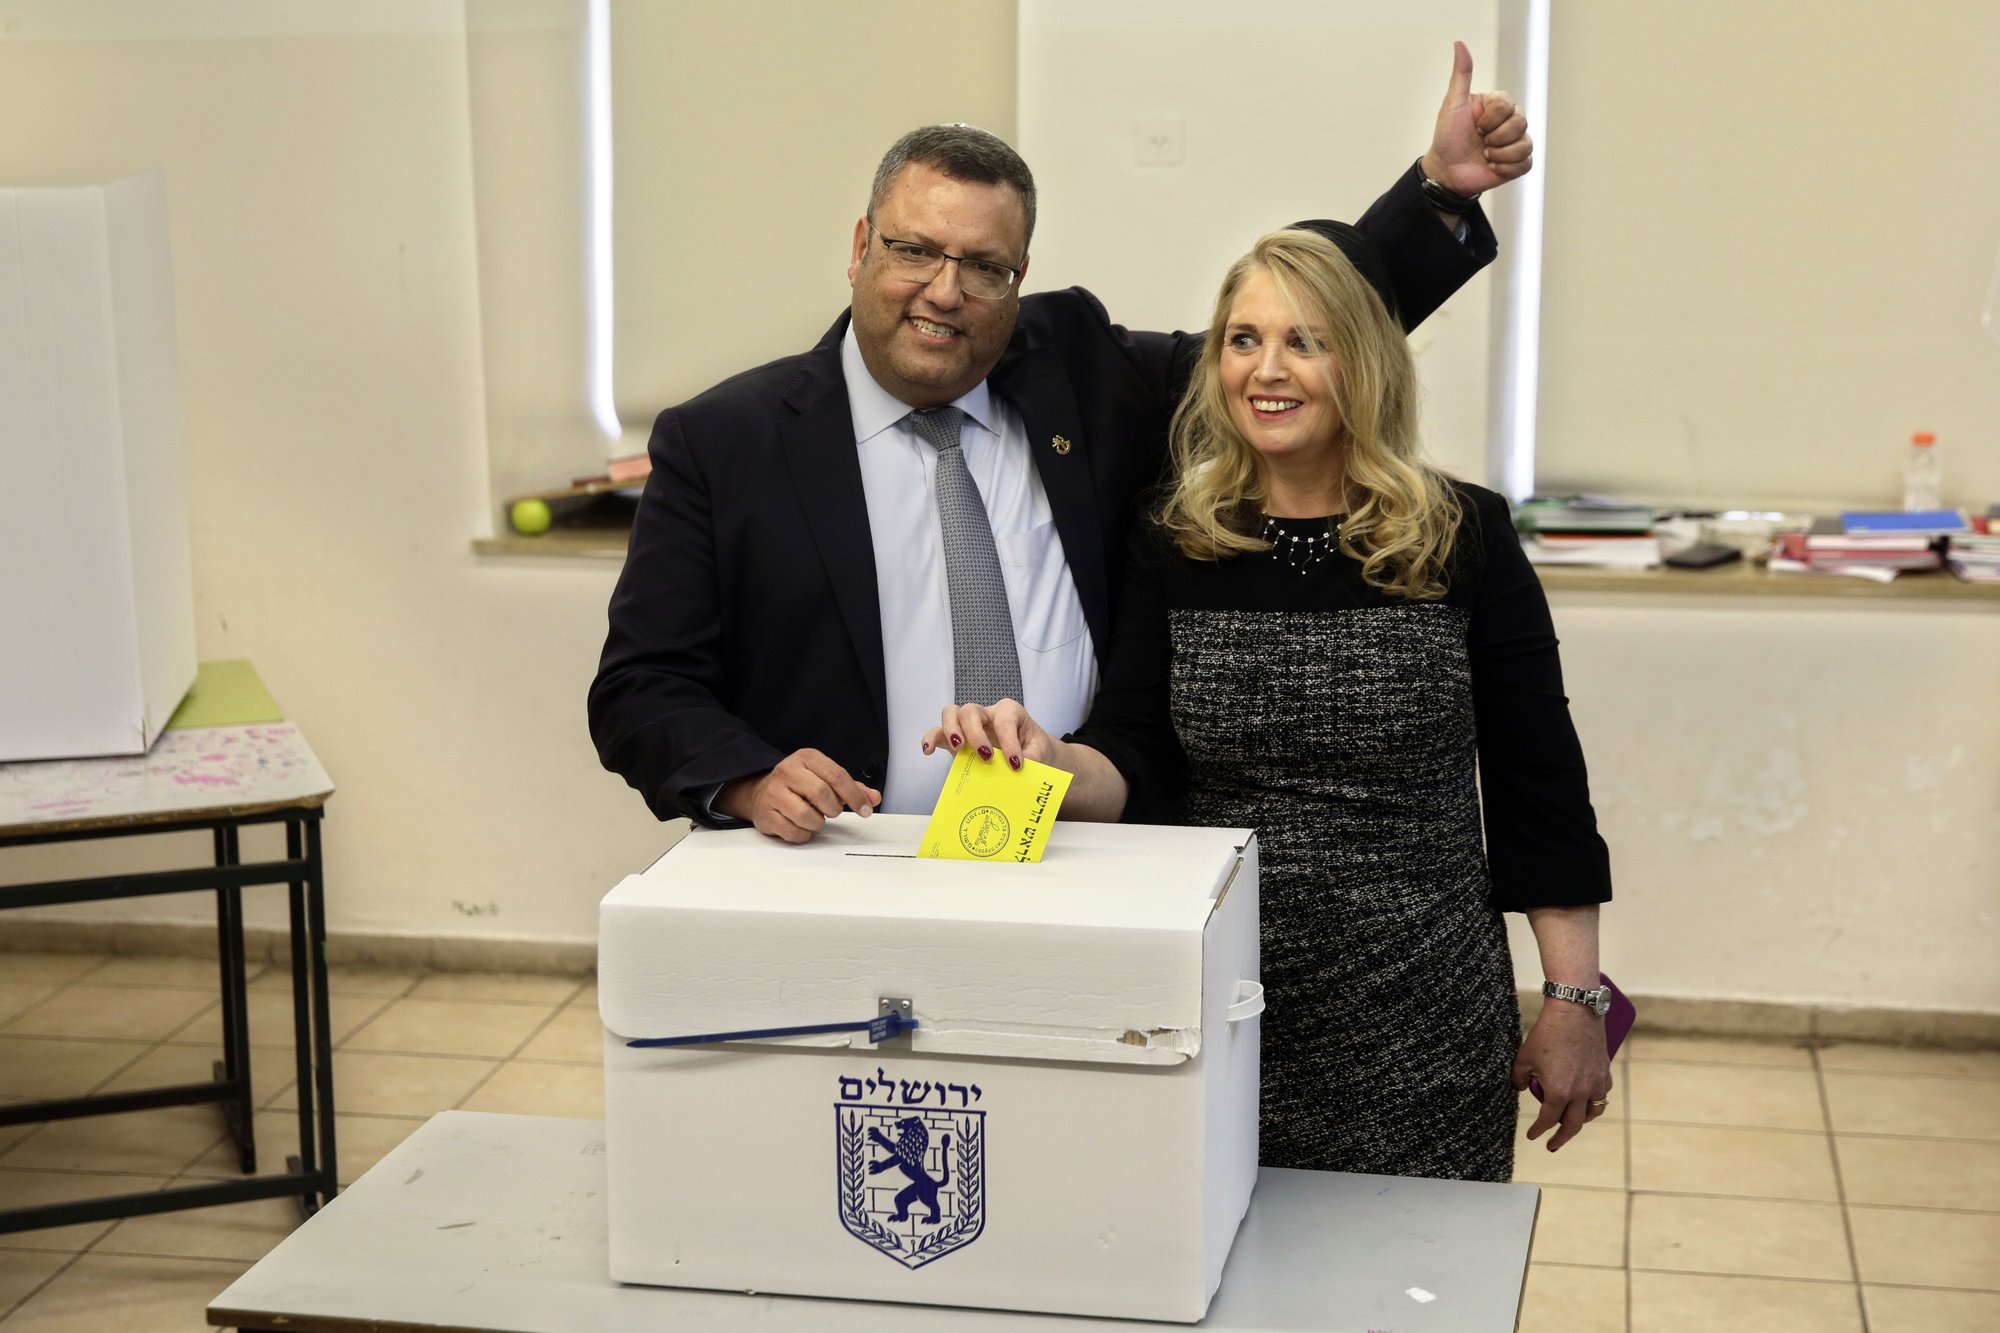 El candidato electo obtuvo el 51,5 % de los votos, mientras que su rival, Ofer Berkowitz, obtuvo el 48,5 % de los respaldos